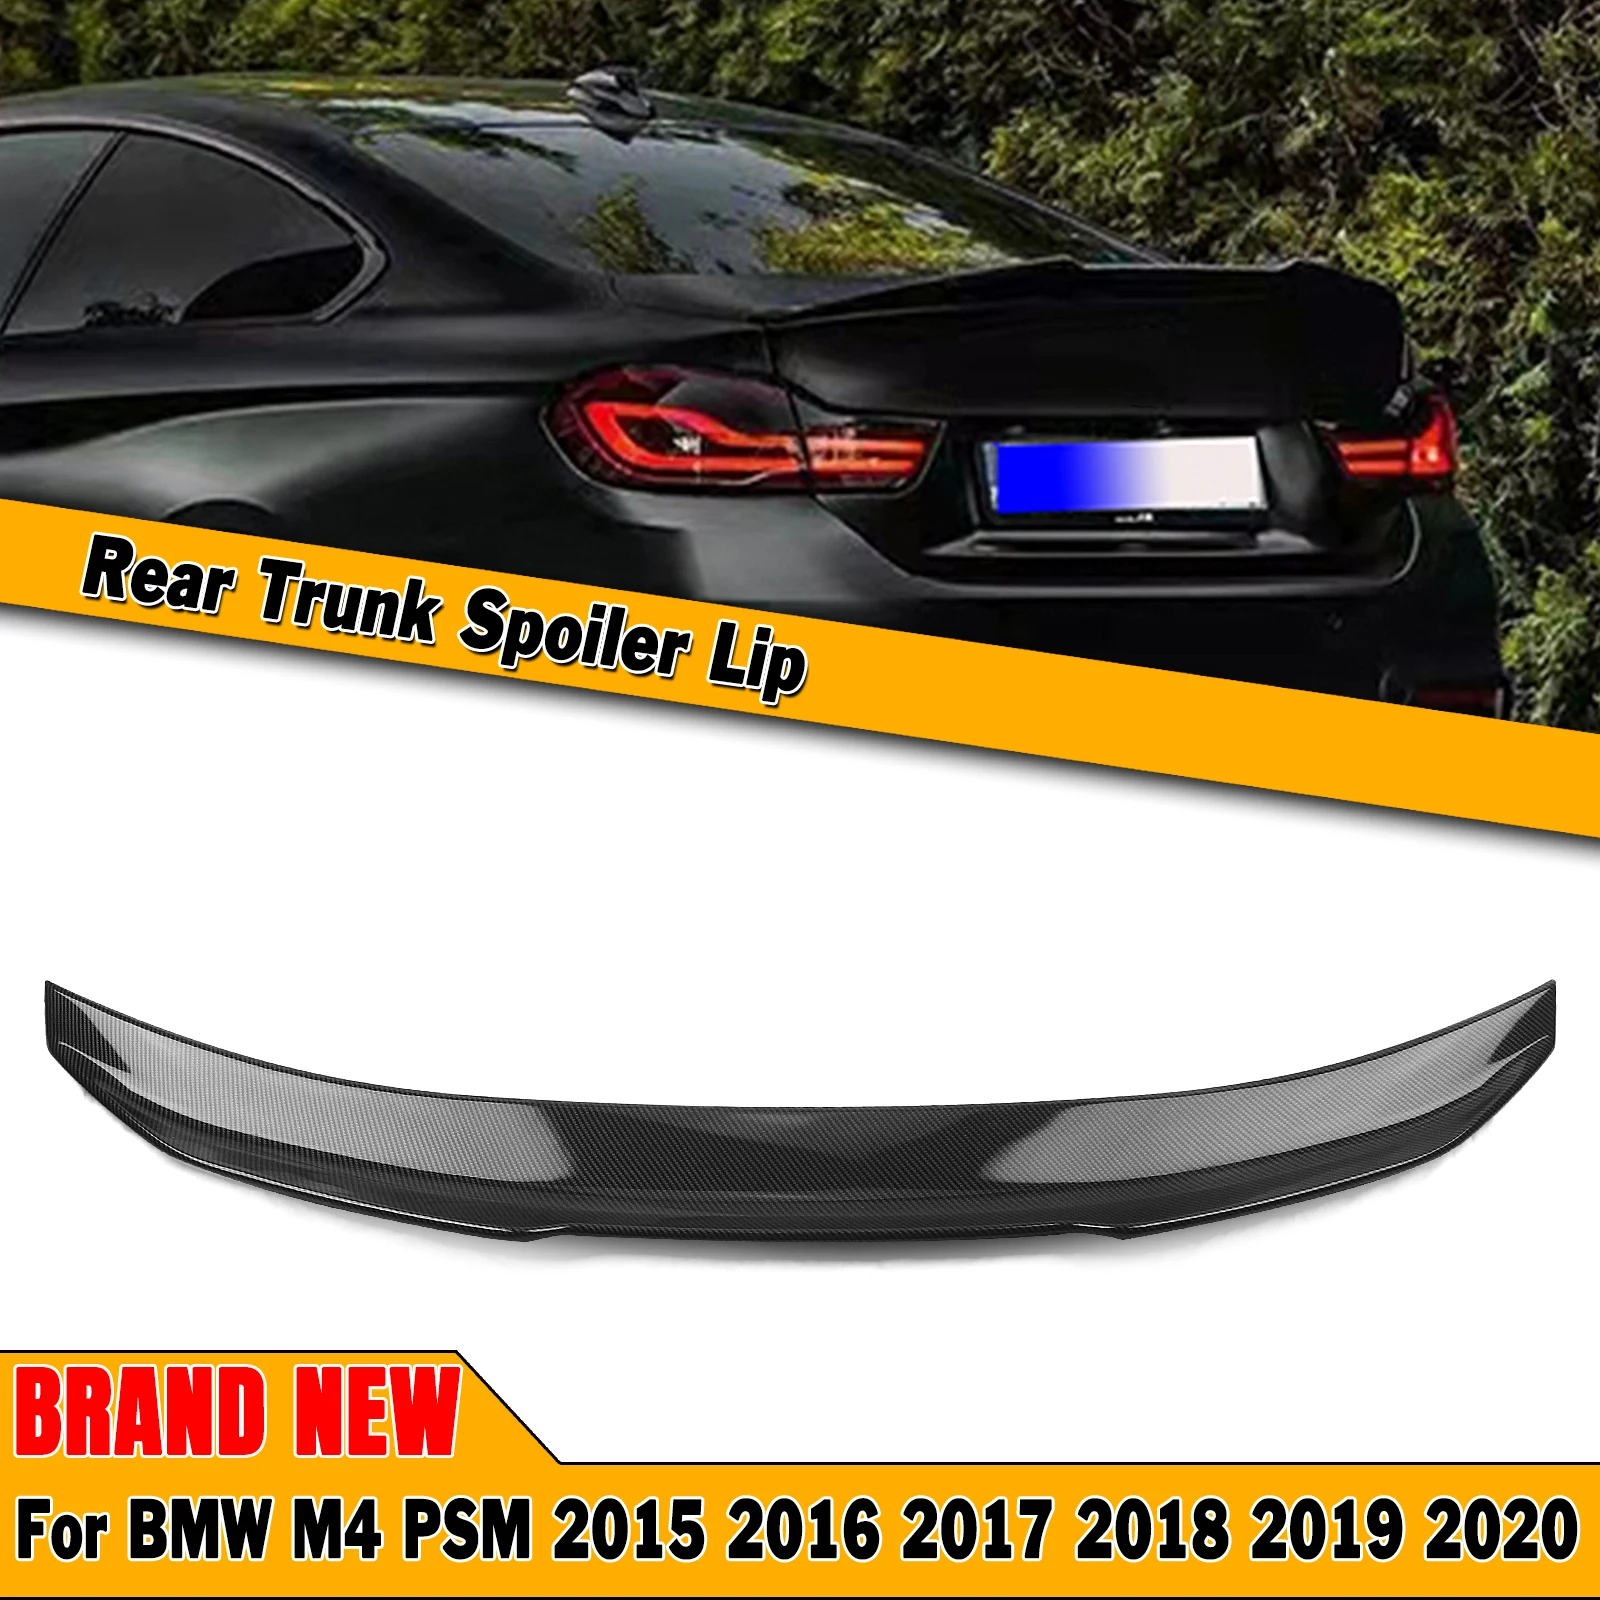 

Для BMW F82 M4 2015-2020 двухдверный купе PSM стиль спойлер заднего багажника, крыла High-Kick ABS углеродное волокно внешний вид автомобиль Decklid сплиттер г...